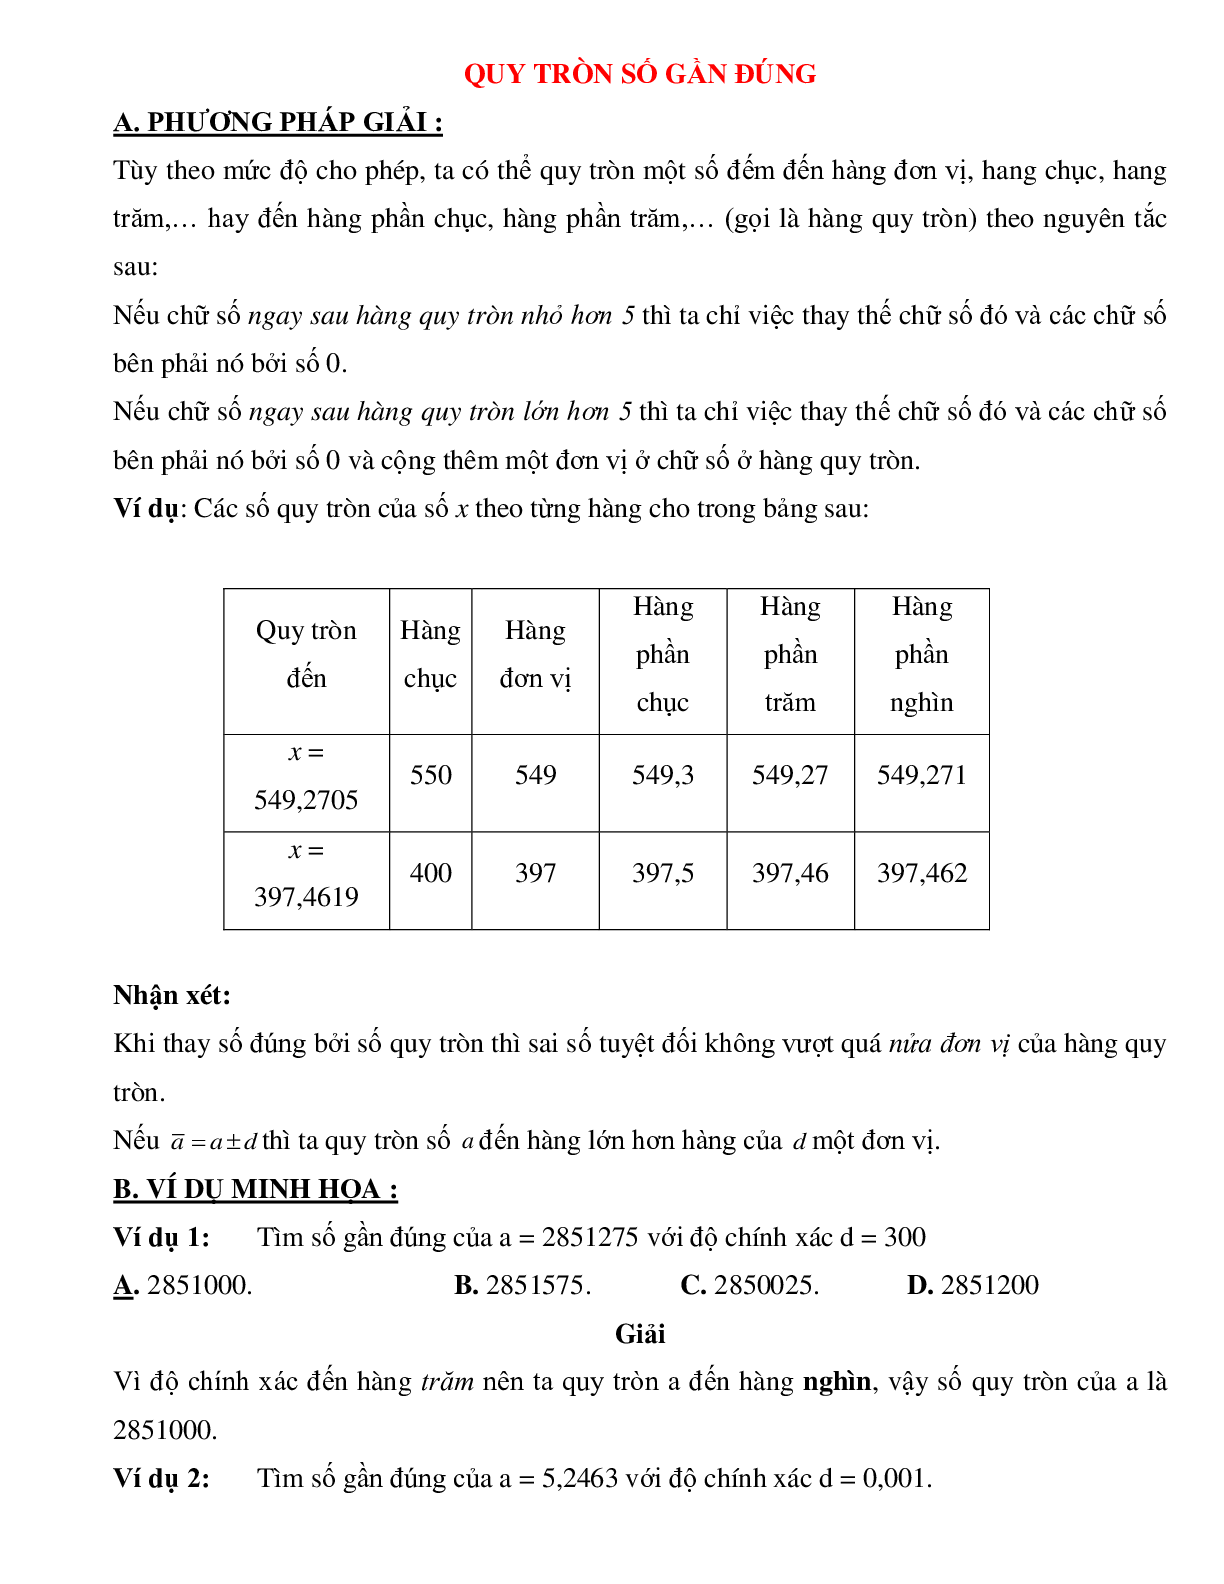 Bài tập tự luyện quy tròn số gần đúng Toán 10 (trang 1)